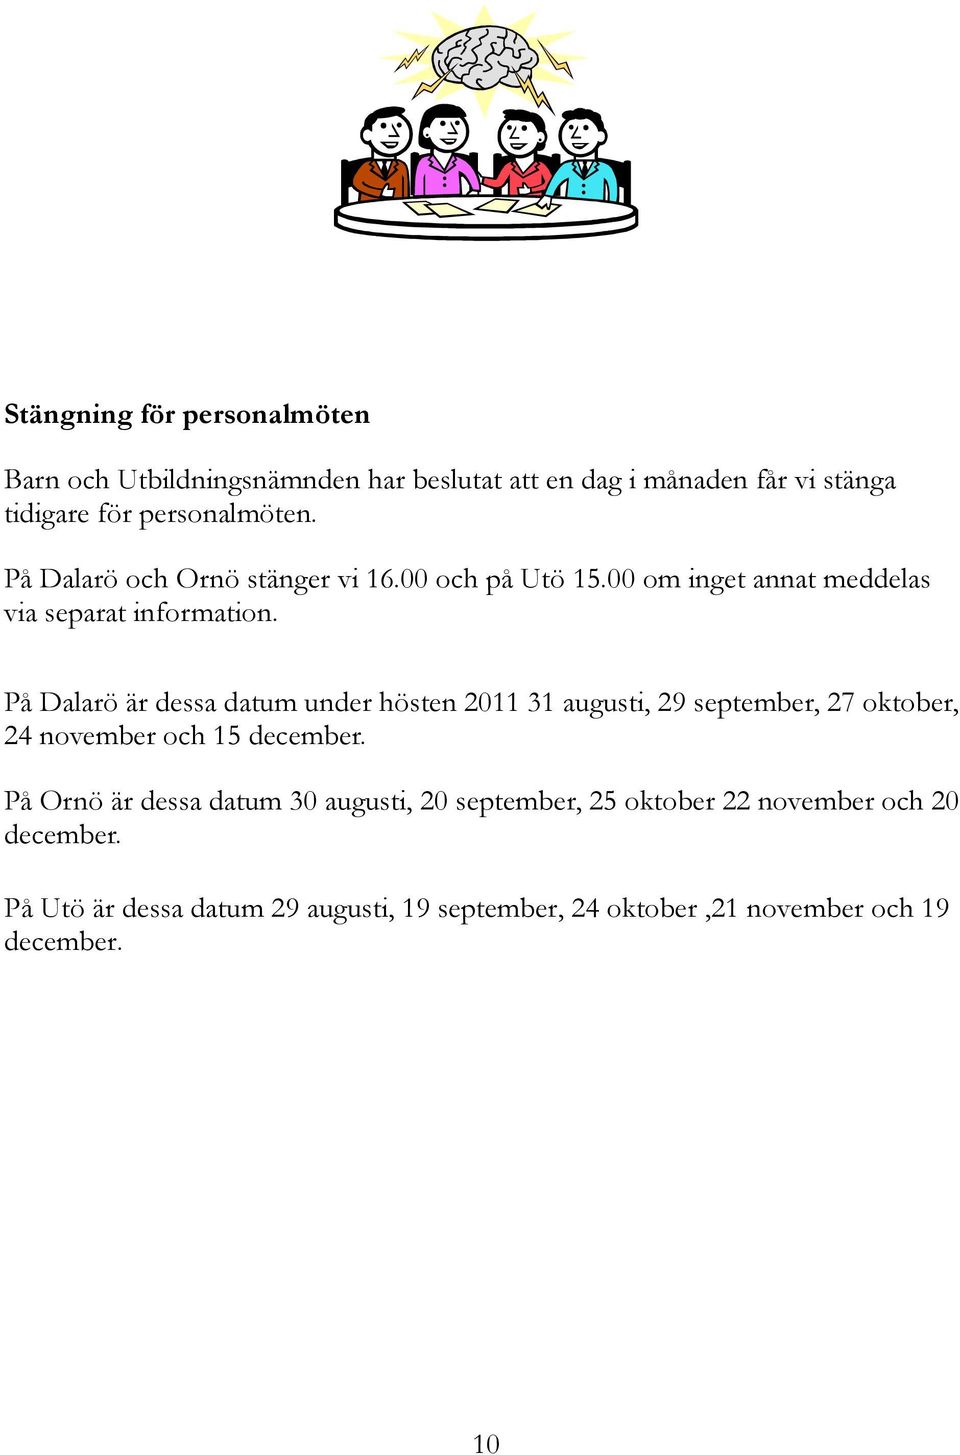 På Dalarö är dessa datum under hösten 2011 31 augusti, 29 september, 27 oktober, 24 november och 15 december.